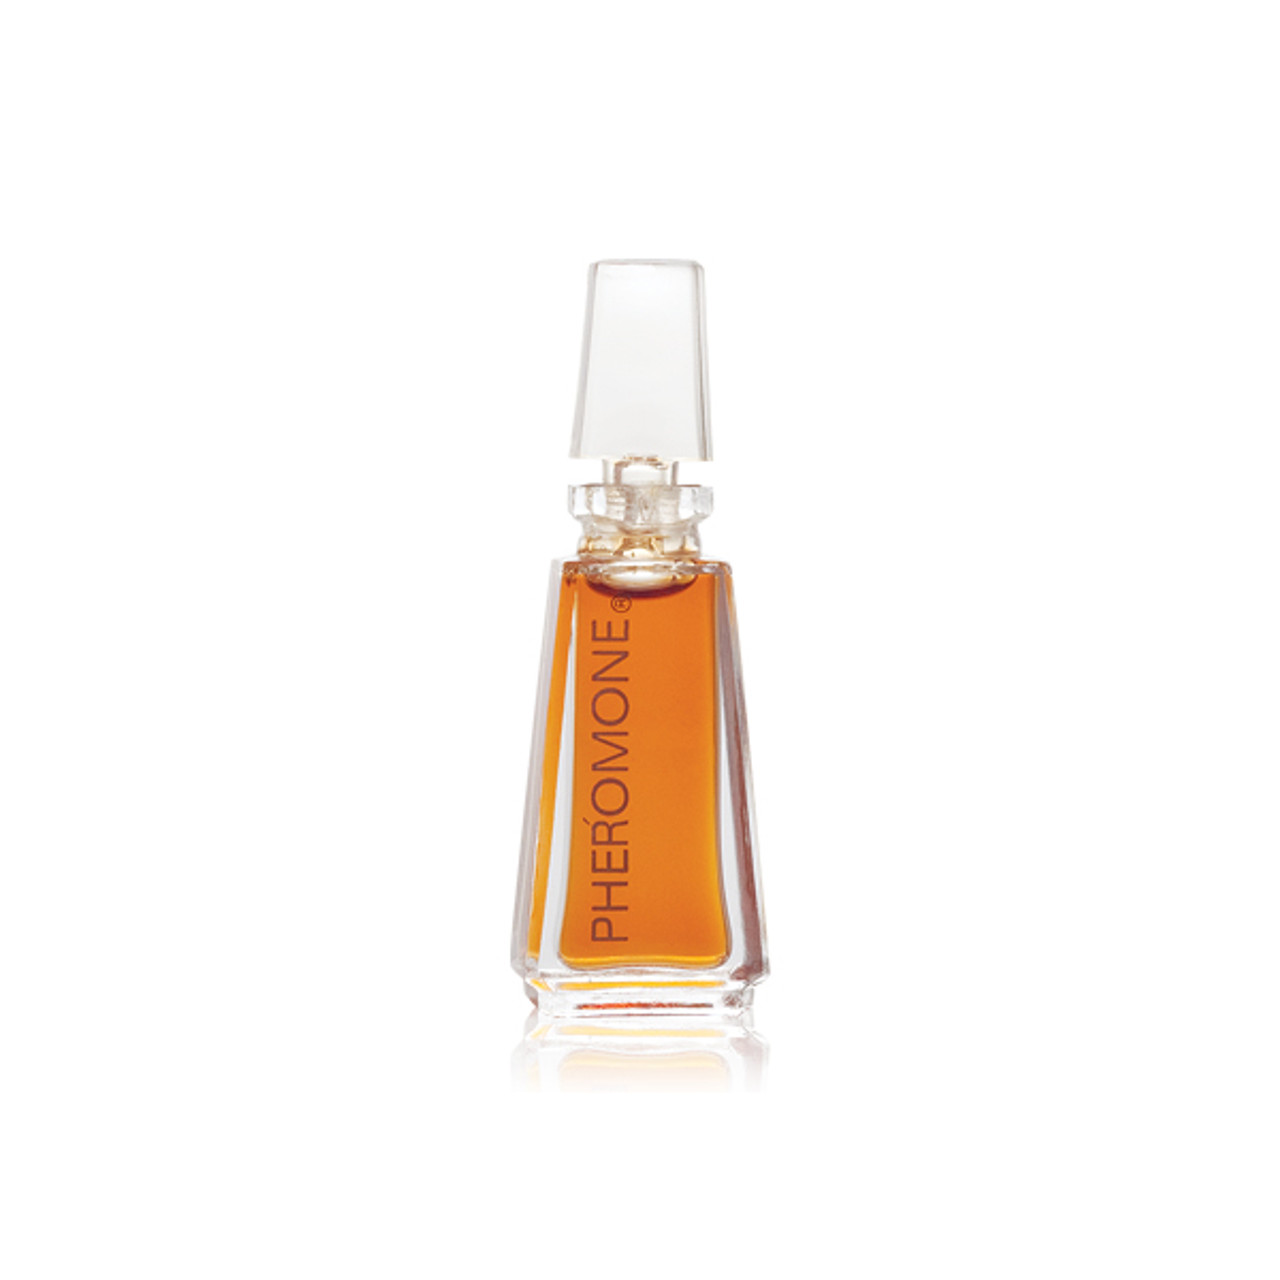 Pheromone Collectible Perfume Miniature 1/8 oz